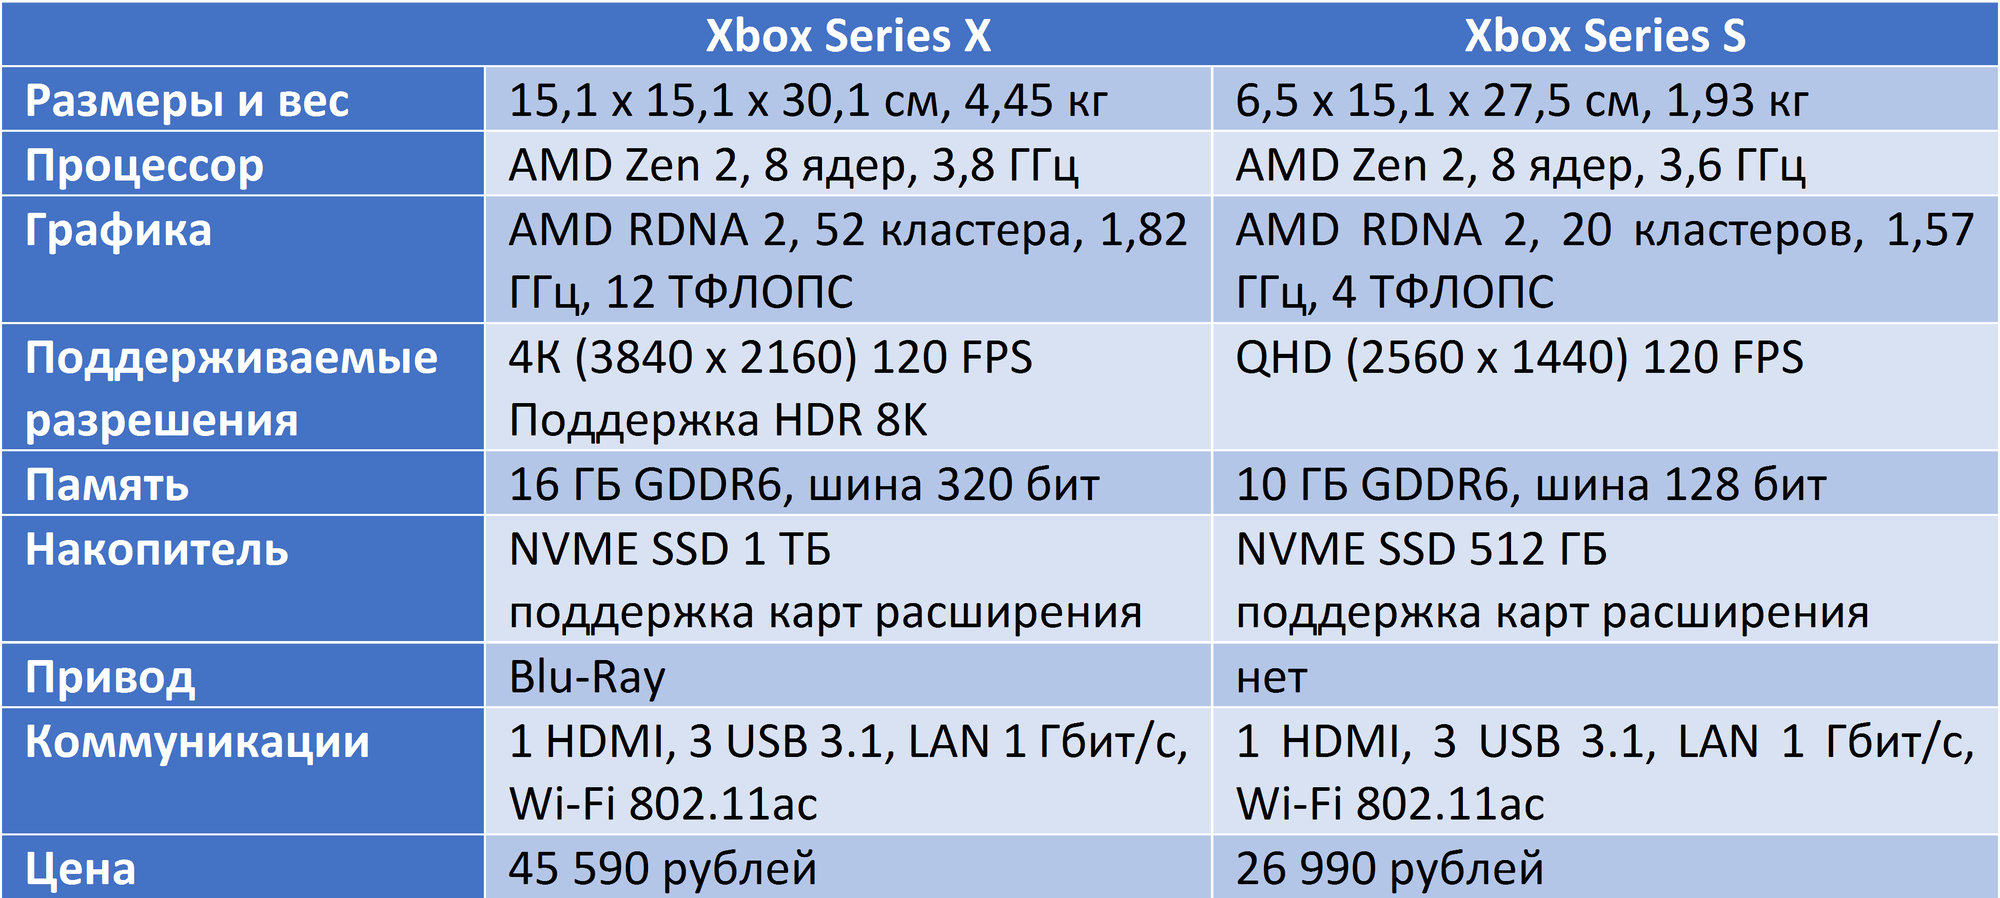 Xbox one характеристики железа. Xbox one x характеристики железа. Xbox Series 1s характеристики. Сравнение характеристик Xbox. Характеристики консолей Xbox.